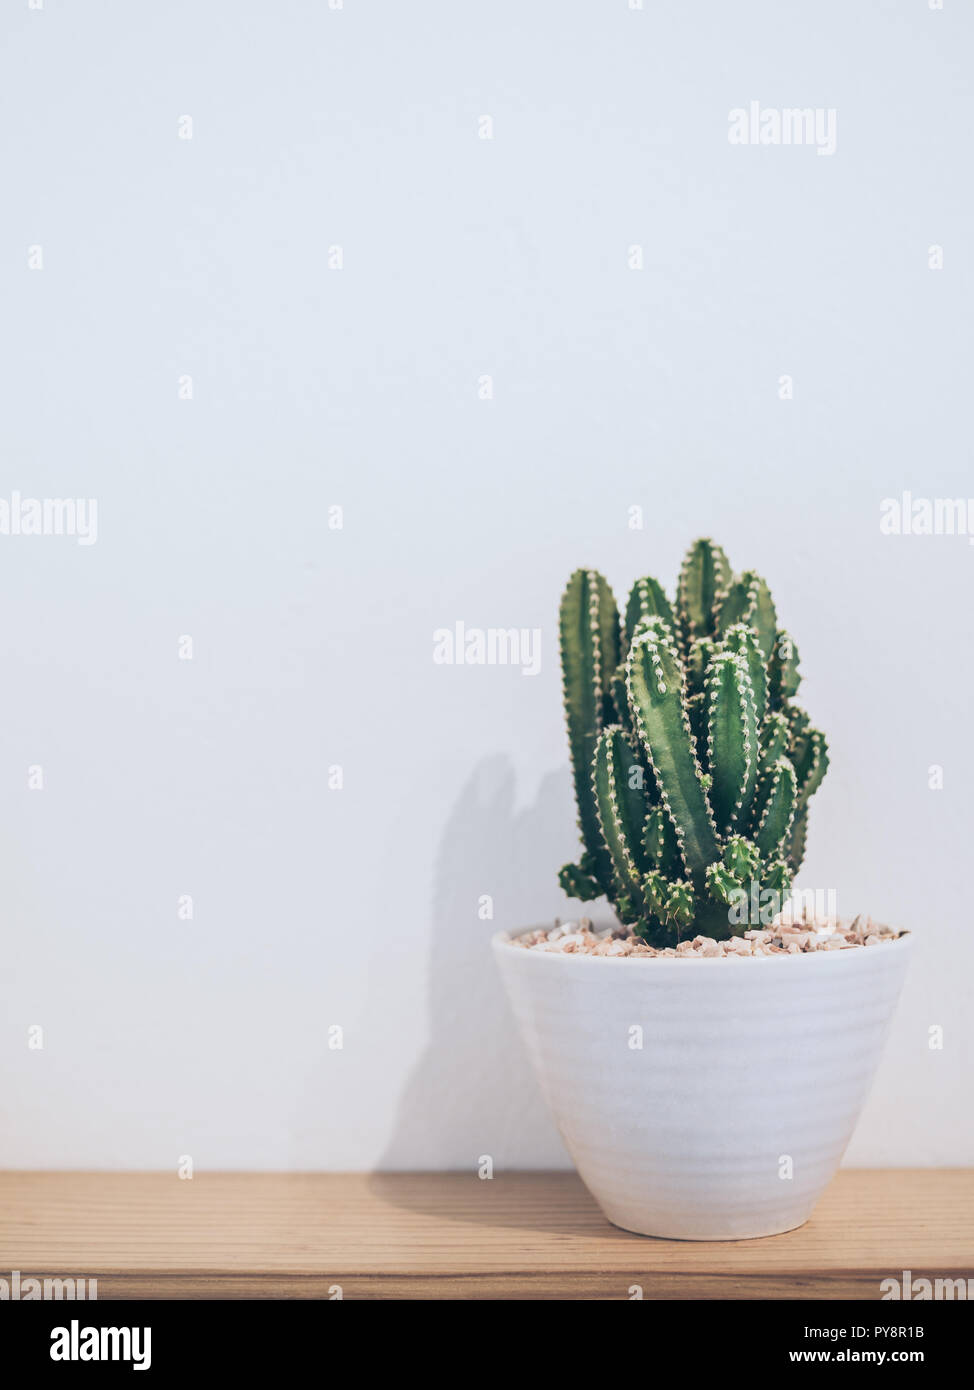 https://c8.alamy.com/compde/py8r1b/kleine-kaktus-pflanze-in-sussen-topf-auf-holzregal-auf-weisse-wand-mit-kopie-raum-vertikale-stil-minimalistischer-stil-dekoration-design-py8r1b.jpg